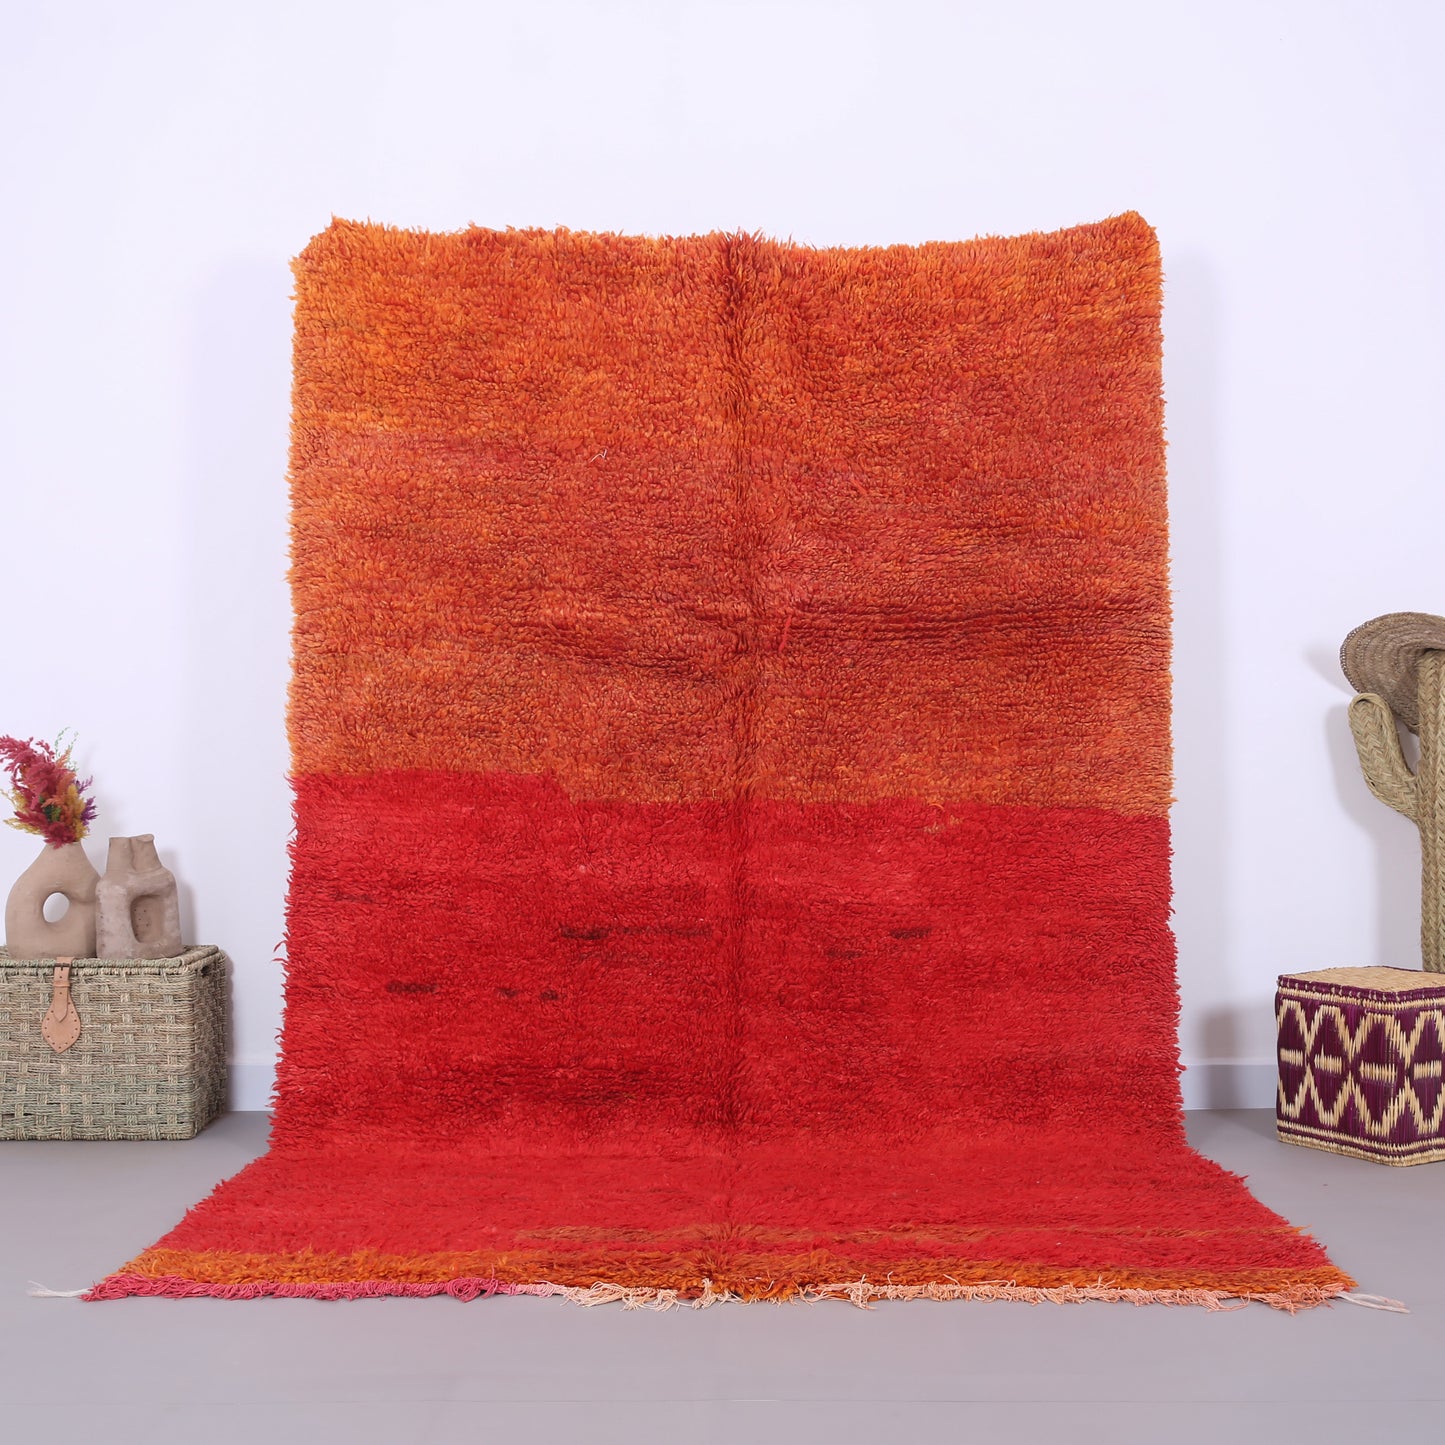 Roter und pfirsichfarbener marokkanischer Teppich 5,8 FT x 9,2 FT - marokkanischer Zottelteppich - Vintage-Tribal-Teppich - handgemachter Berberteppich - einzigartiger Vintage-Teppich - Boho-Teppich